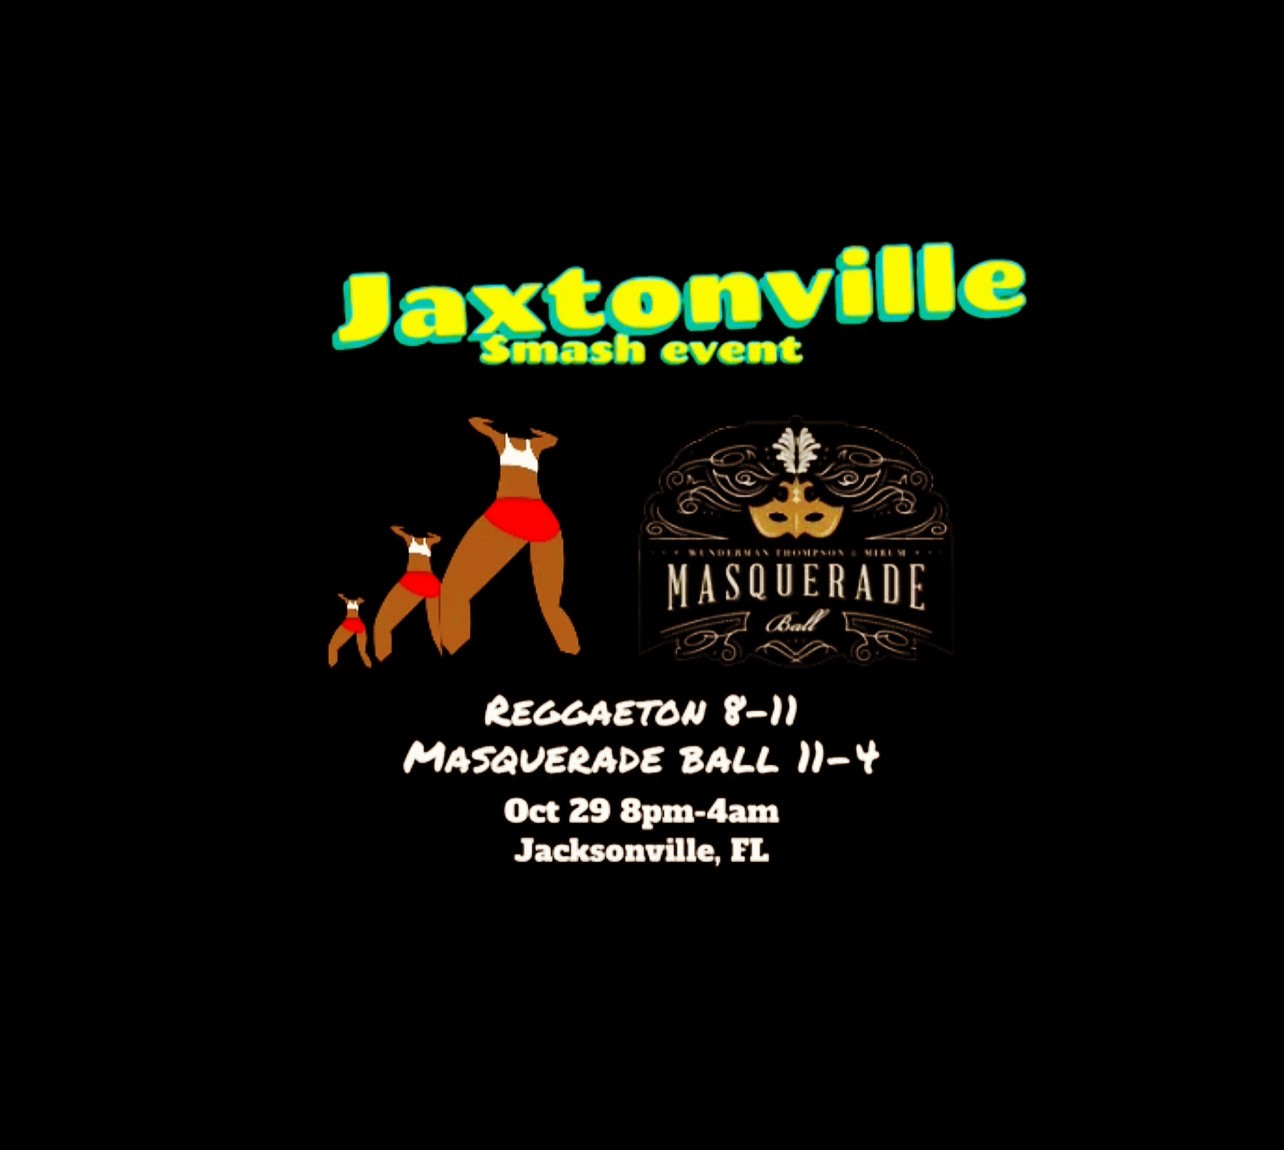 Jaxtonville Smash Event on oct. 29, 20:00@Clubhouse - Compra entradas y obtén información enwww.jaxtonville.com 